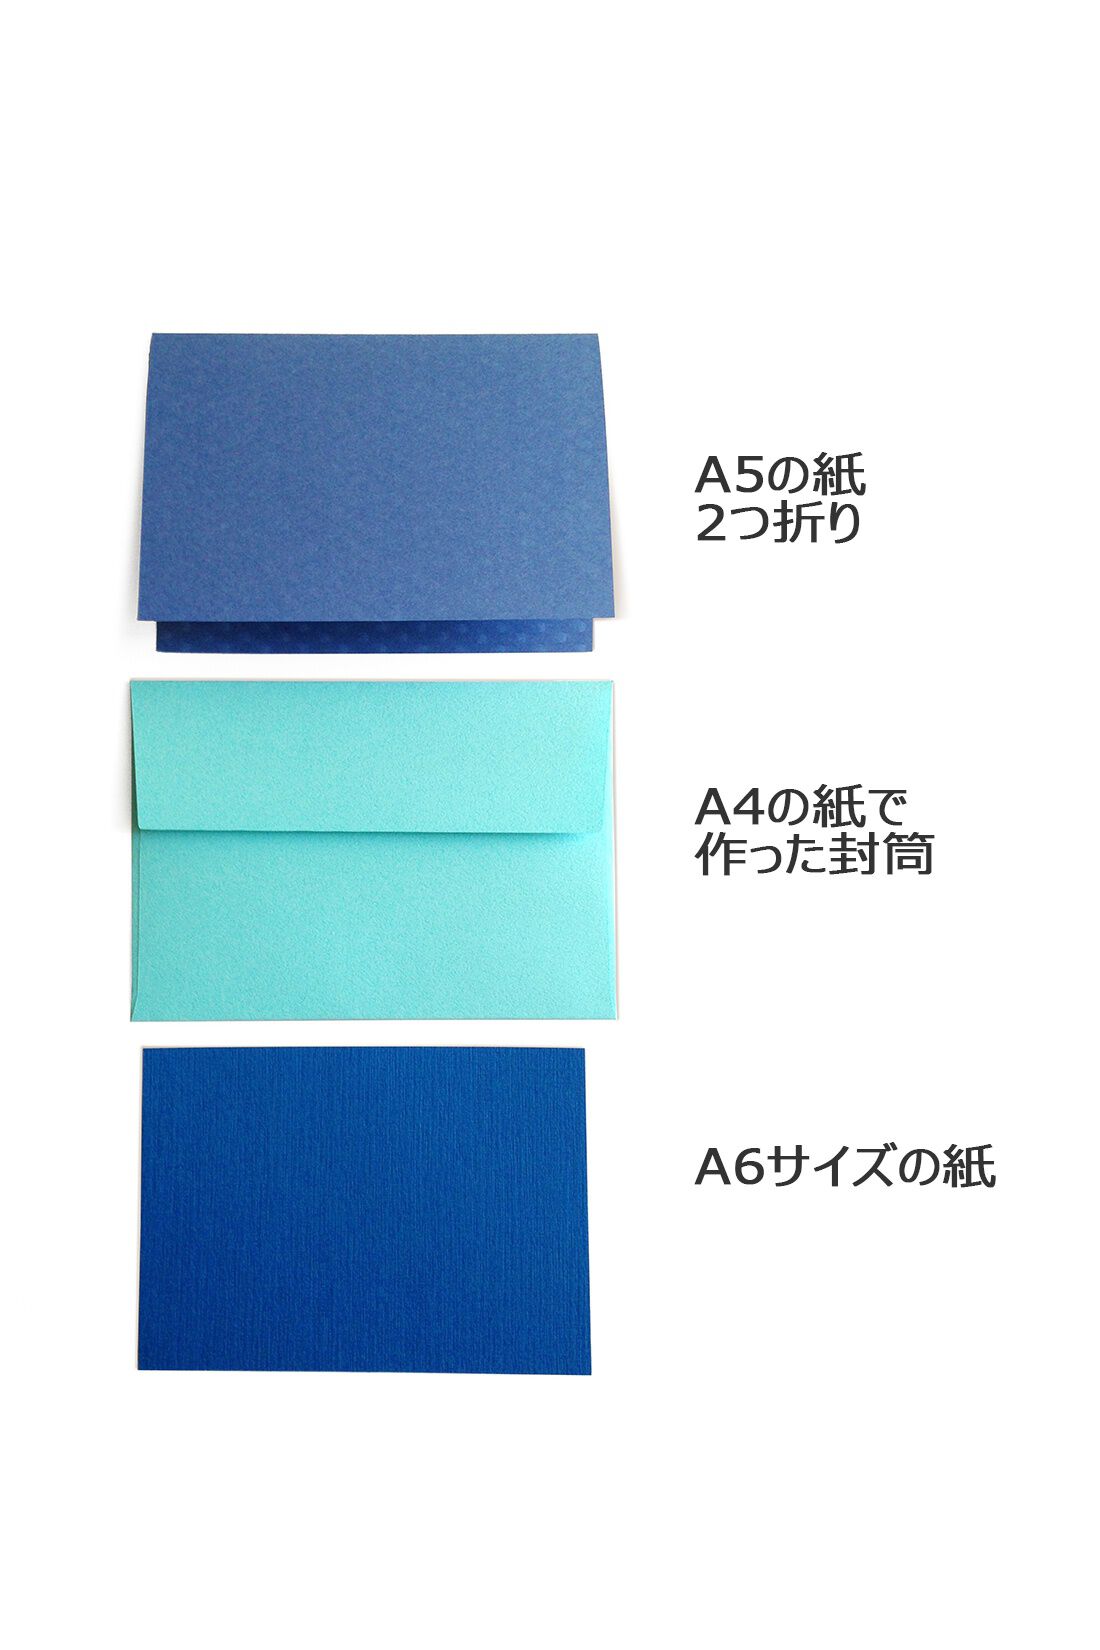 OSYAIRO|OSYAIRO 紙の専門商社竹尾が選ぶ　色を楽しむ紙セットの会〈青〉|A4で作った封筒は、A5なら二つ折り、A6ならそのままでちょうど入るサイズです。